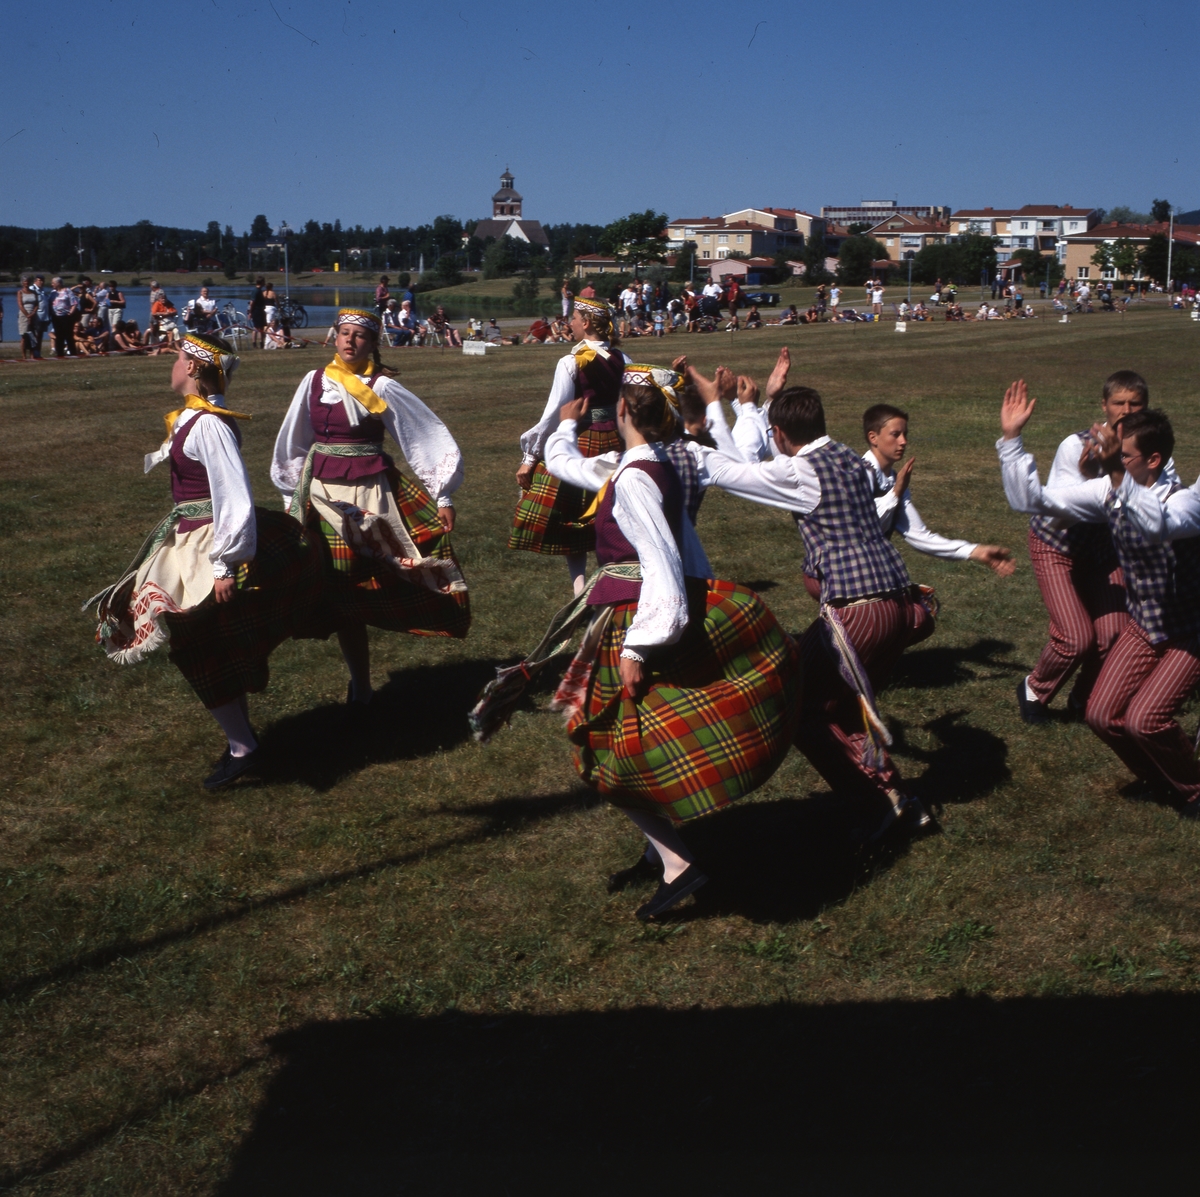 Hälsingehambon för 36:e gången, Kolgårdens före detta idrottsplats i Bollnäs, 7 juli 2001. Uppträdande av utländska folkdansare.